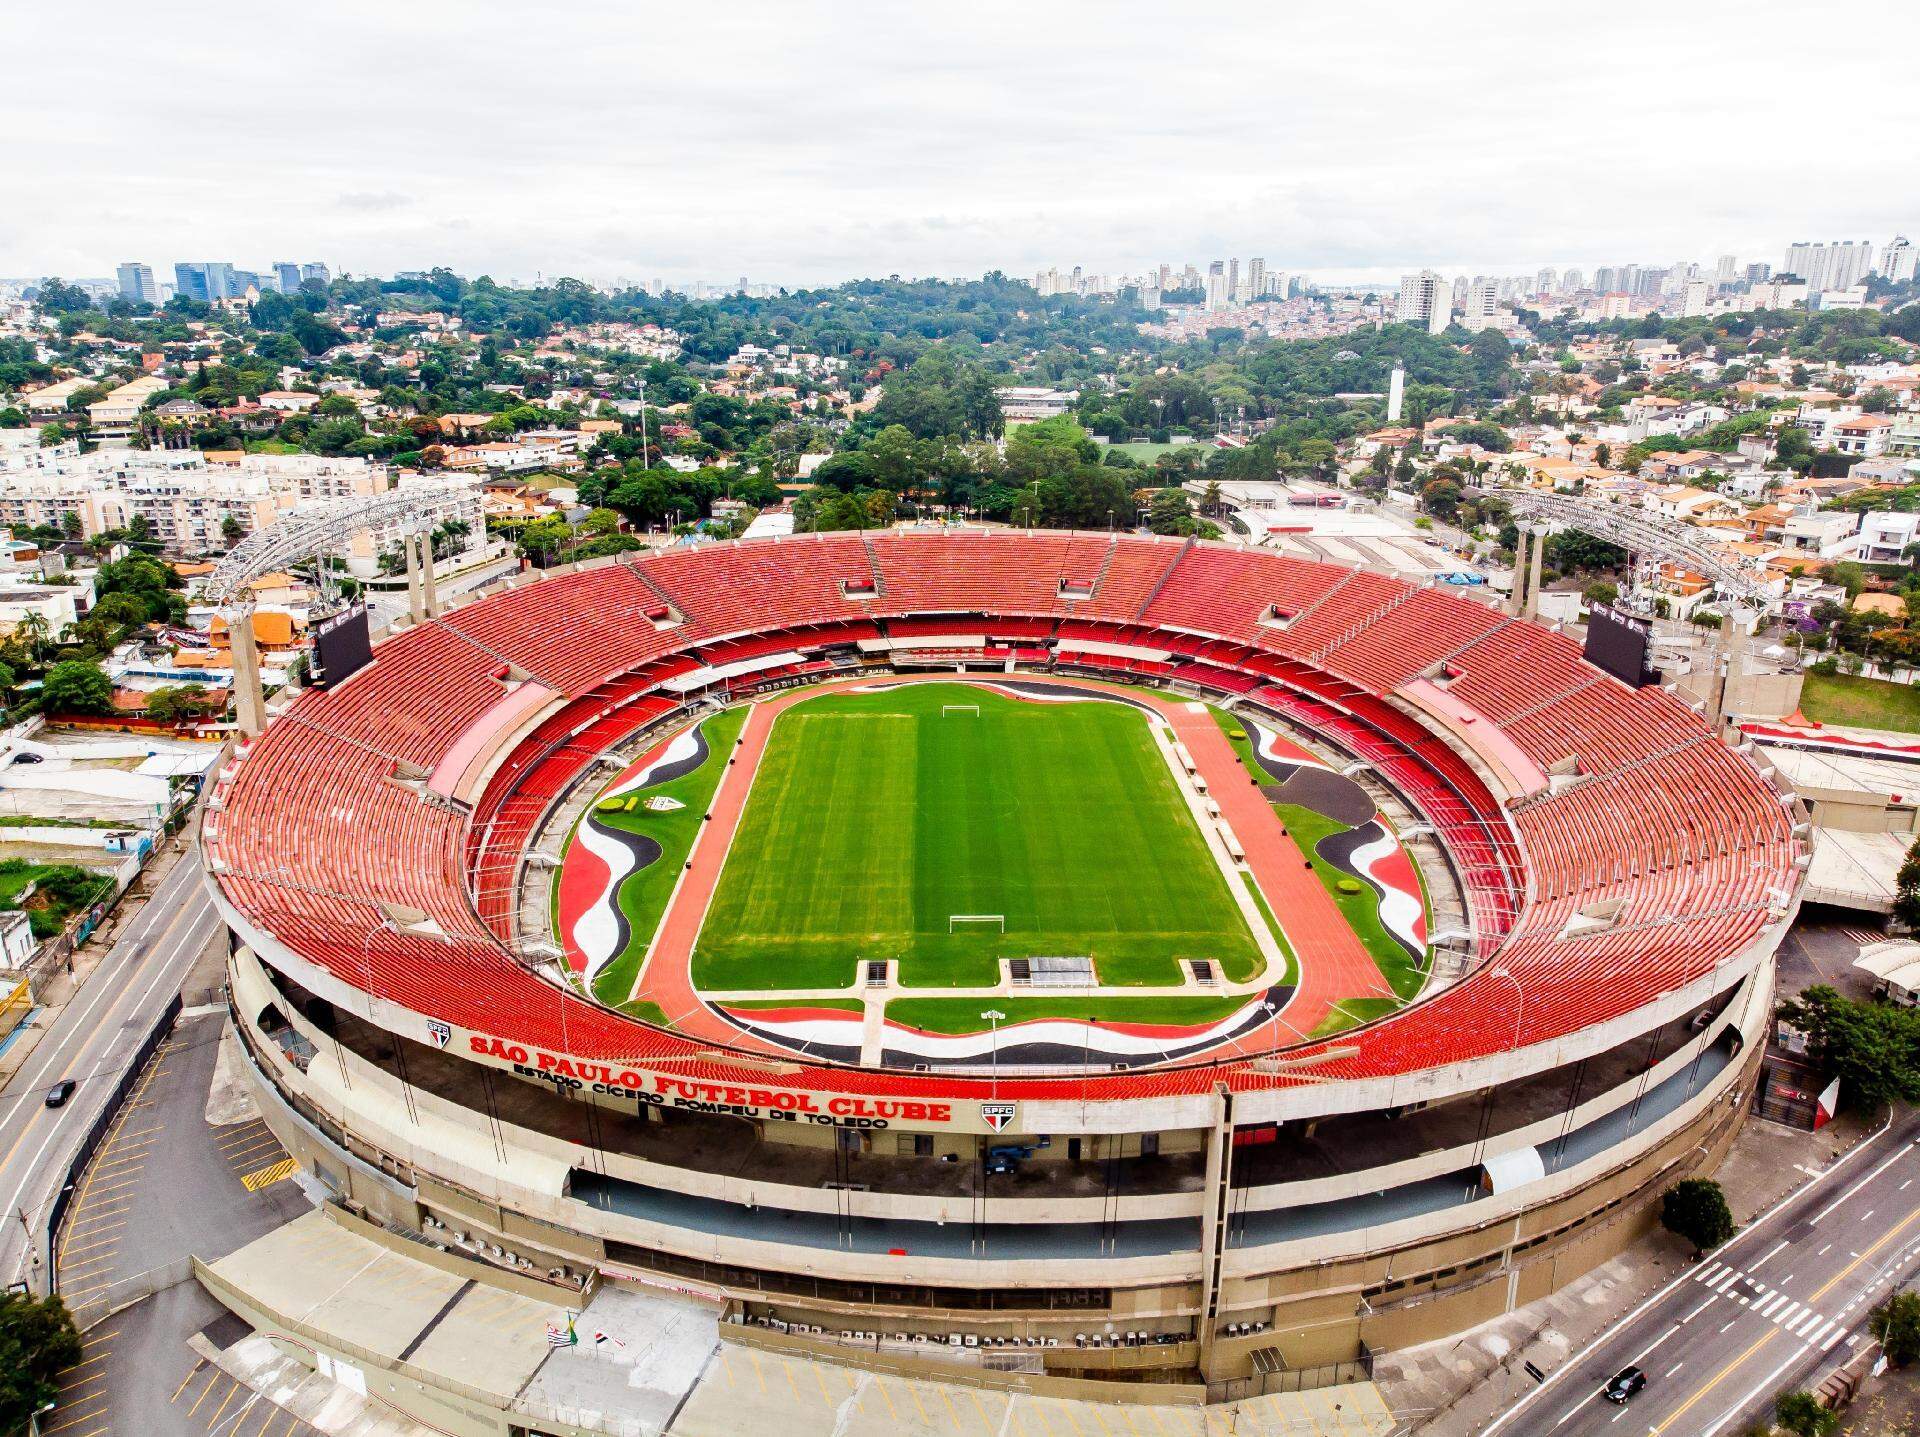 Terça de futebol tem jogos da seleção e também da Copa do Brasil - Esportes  - Campo Grande News